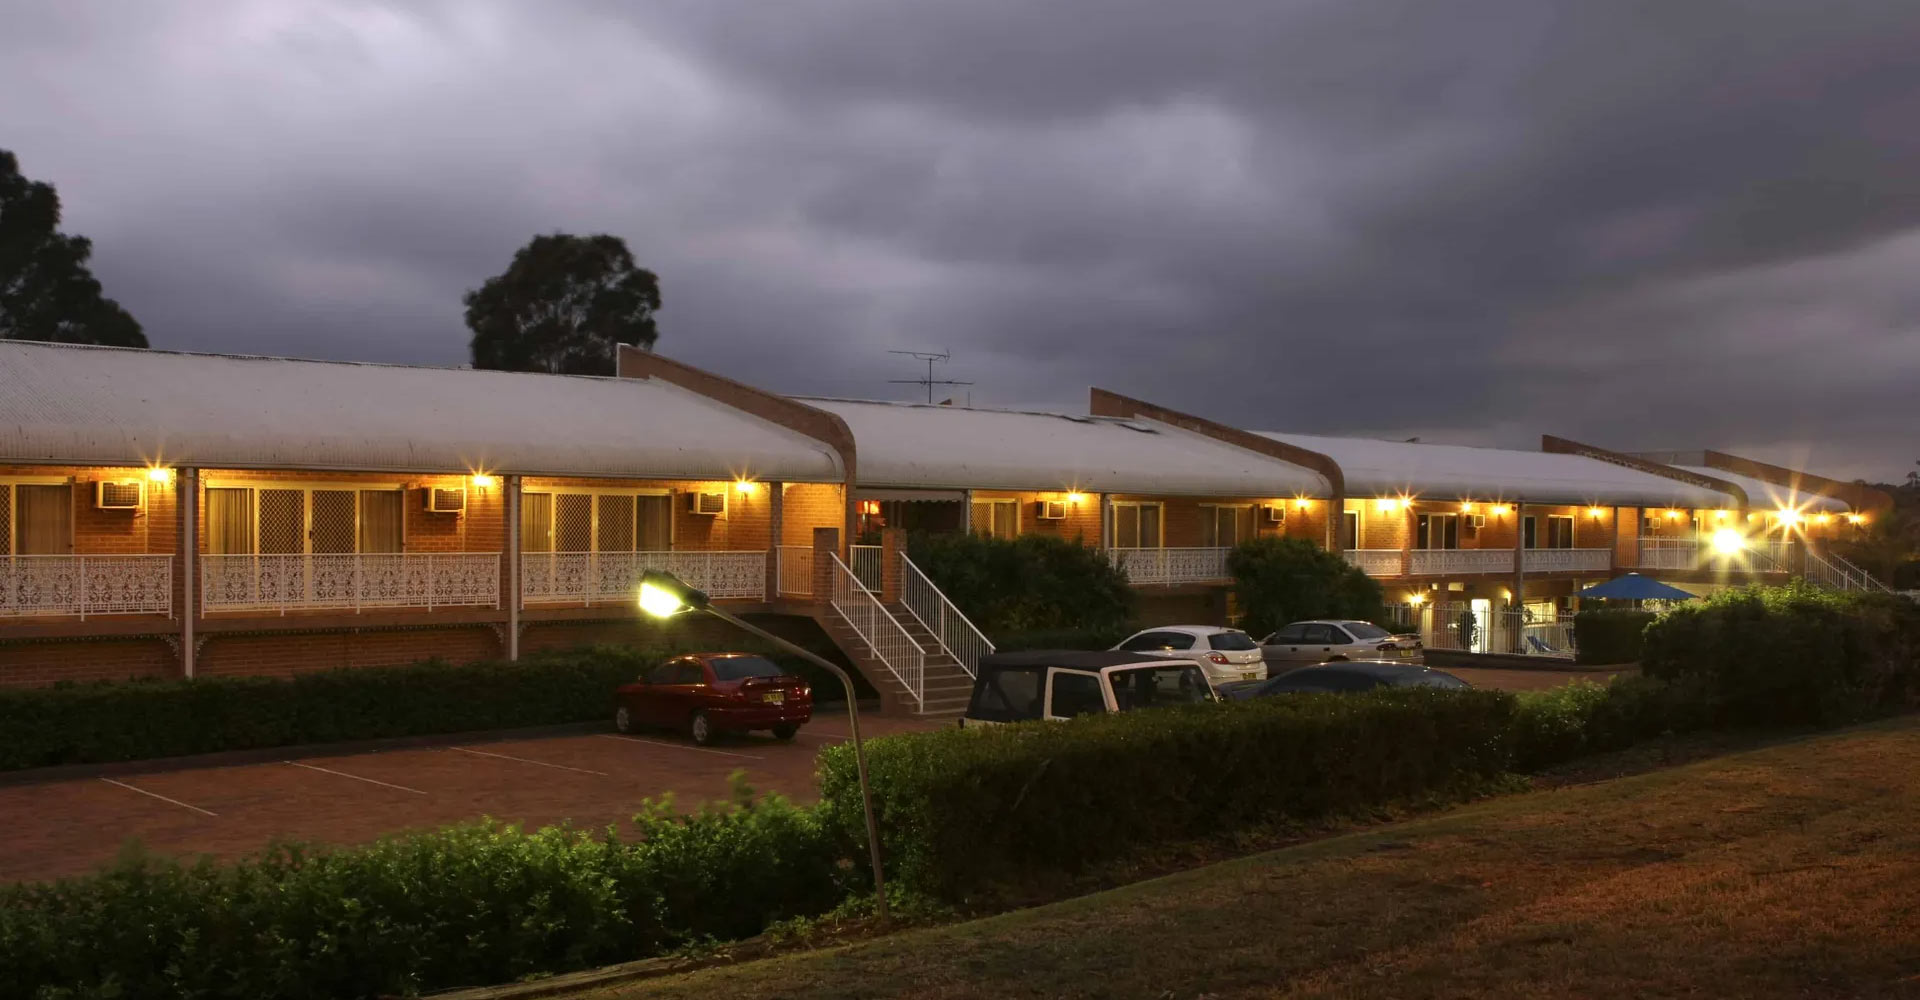 The Hermitage Motel